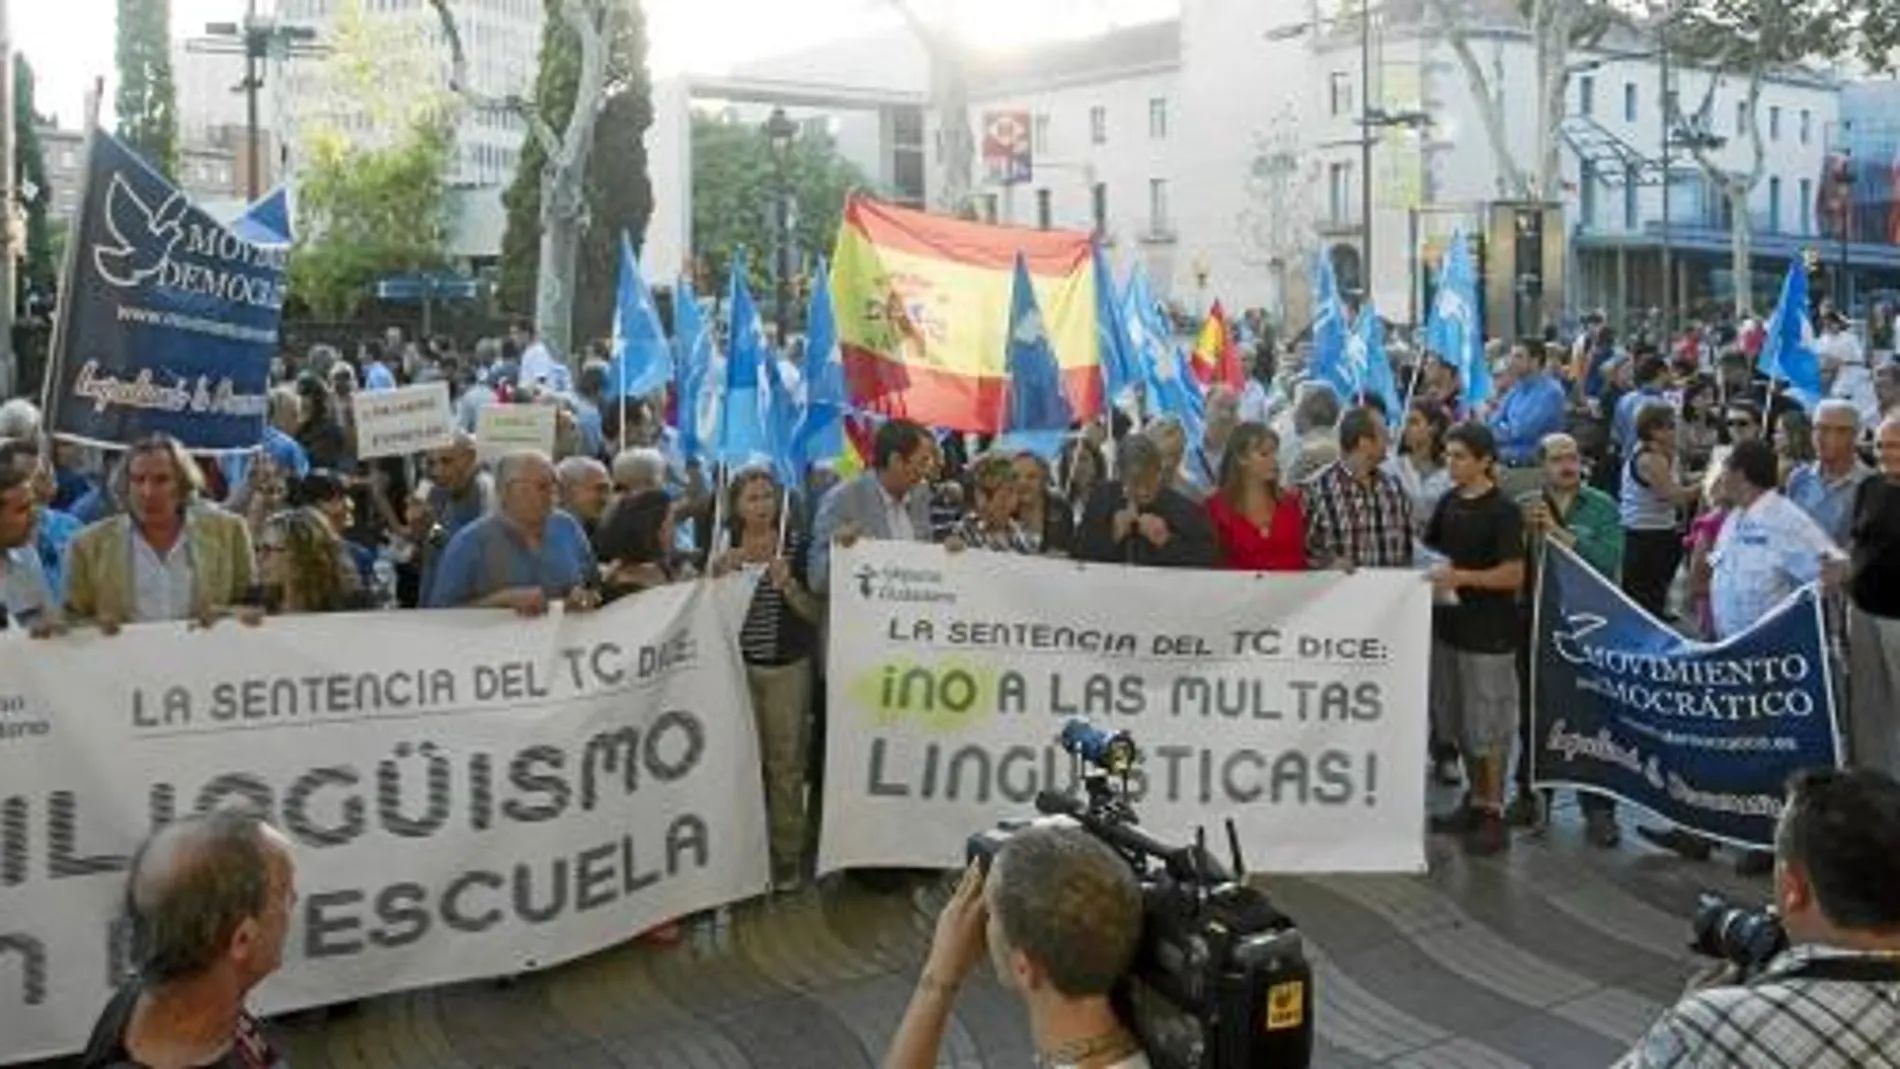 El bilngüismo en la escuela fue otra de las banderas de un acto de Impulso Ciudadano que respaldaron PP, UPyD y Ciutadans, entre otros